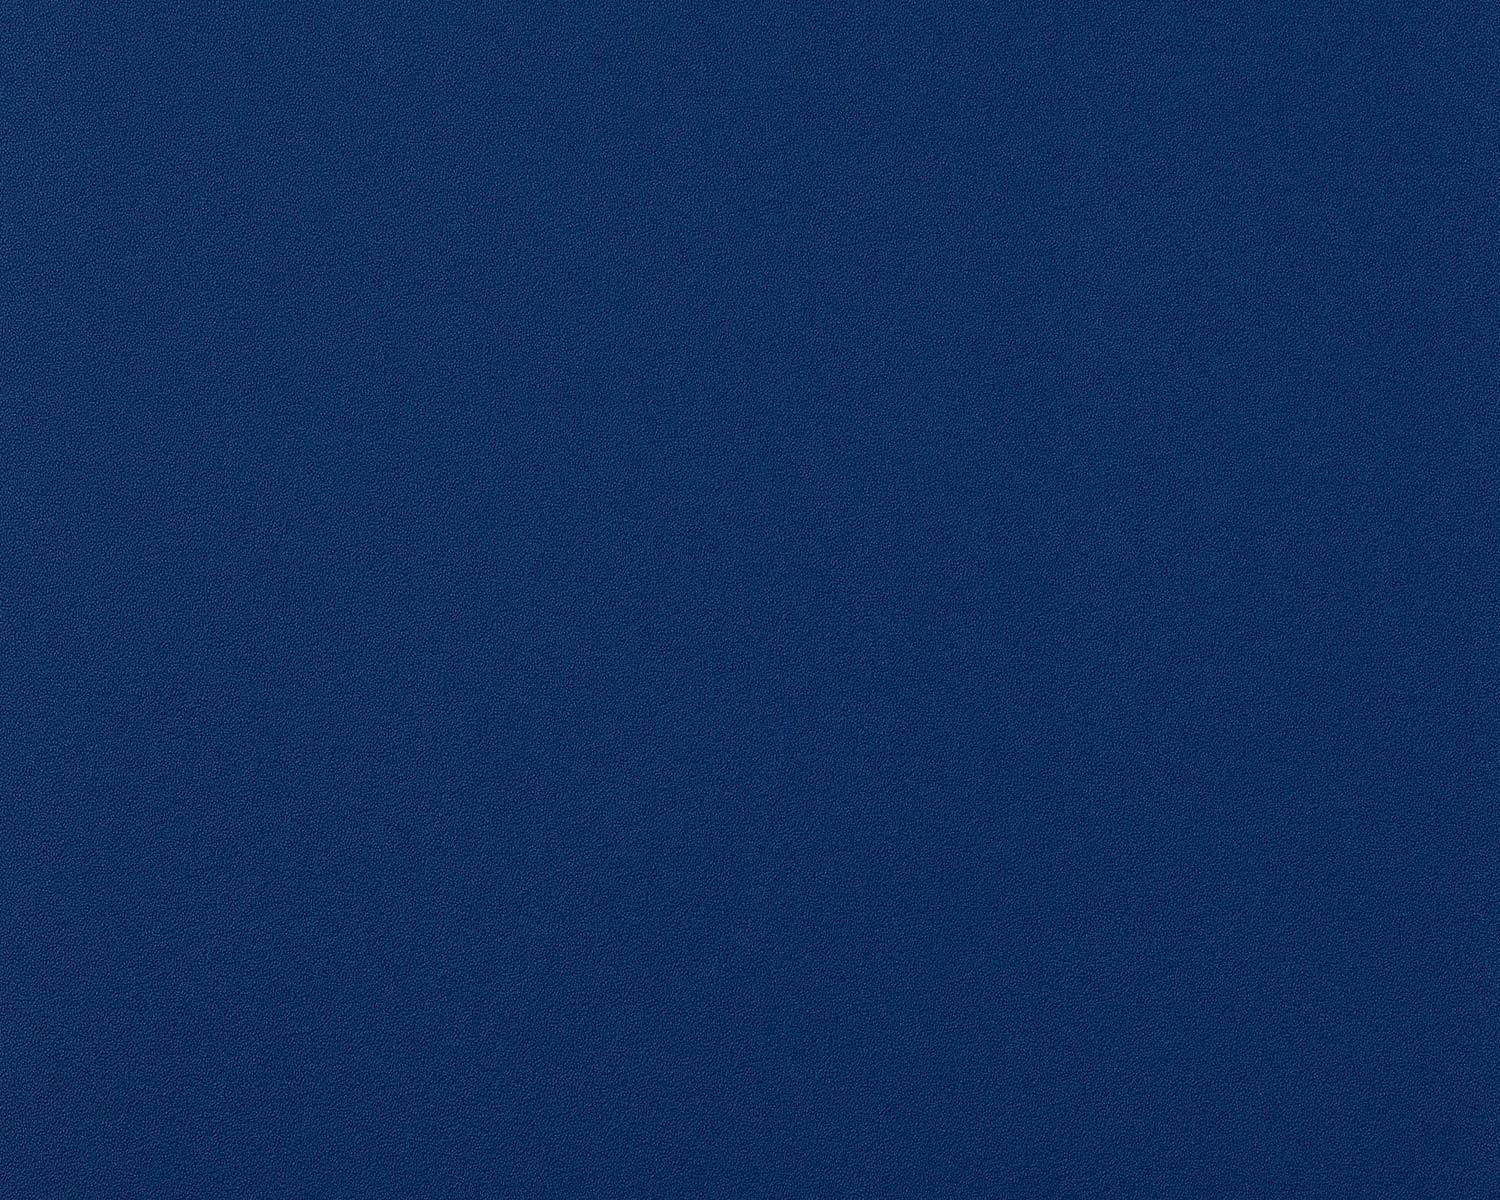 A Minimalistic Dark Blue Plain Wallpaper Wallpaper